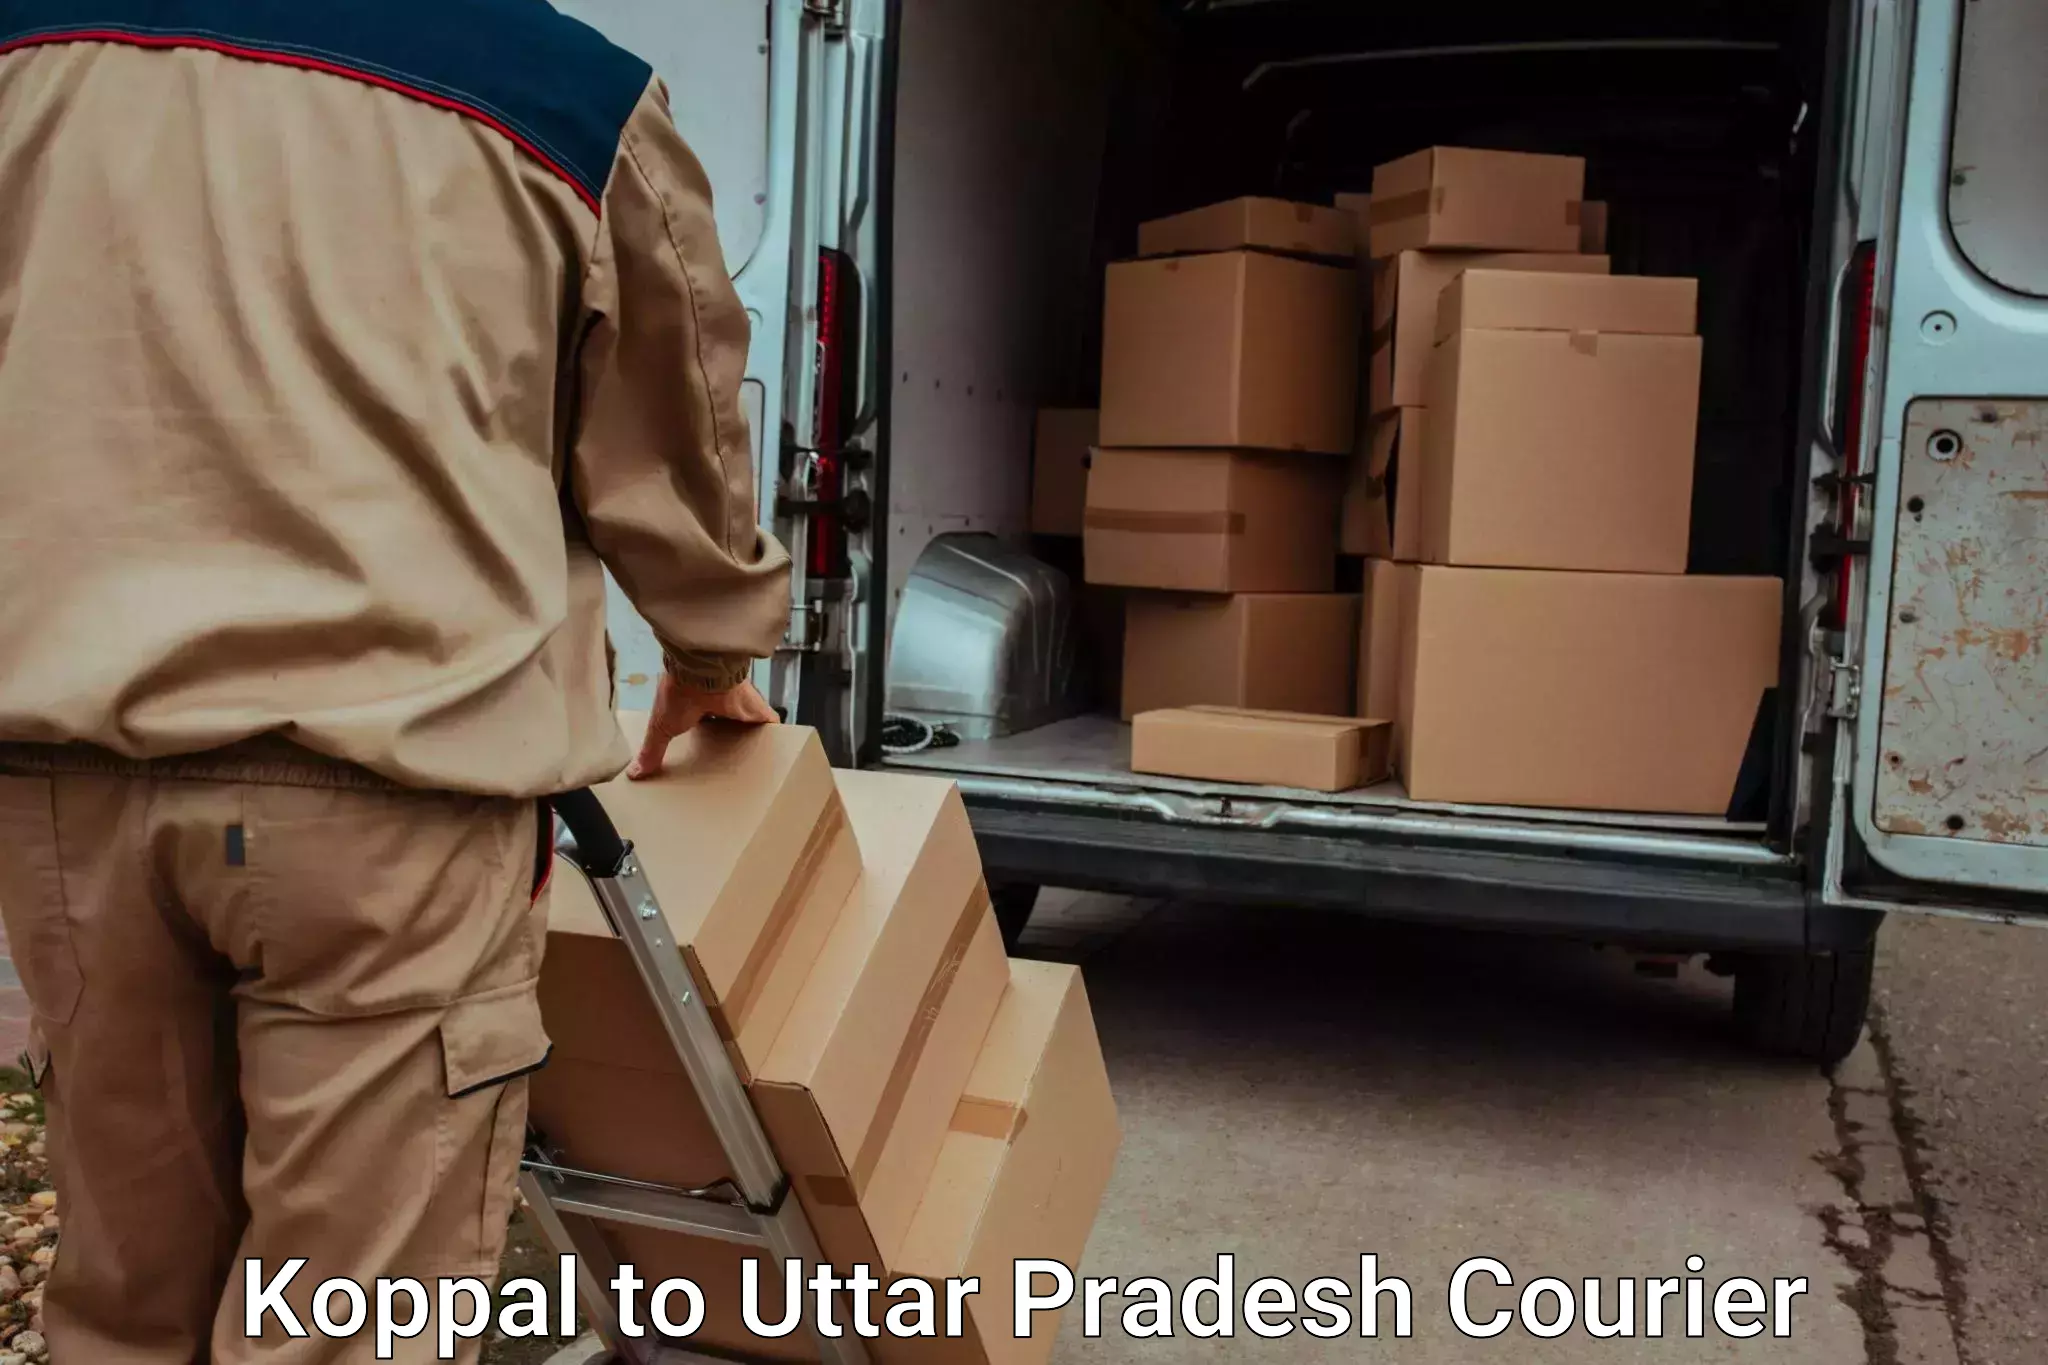 Baggage shipping quotes Koppal to Allahabad